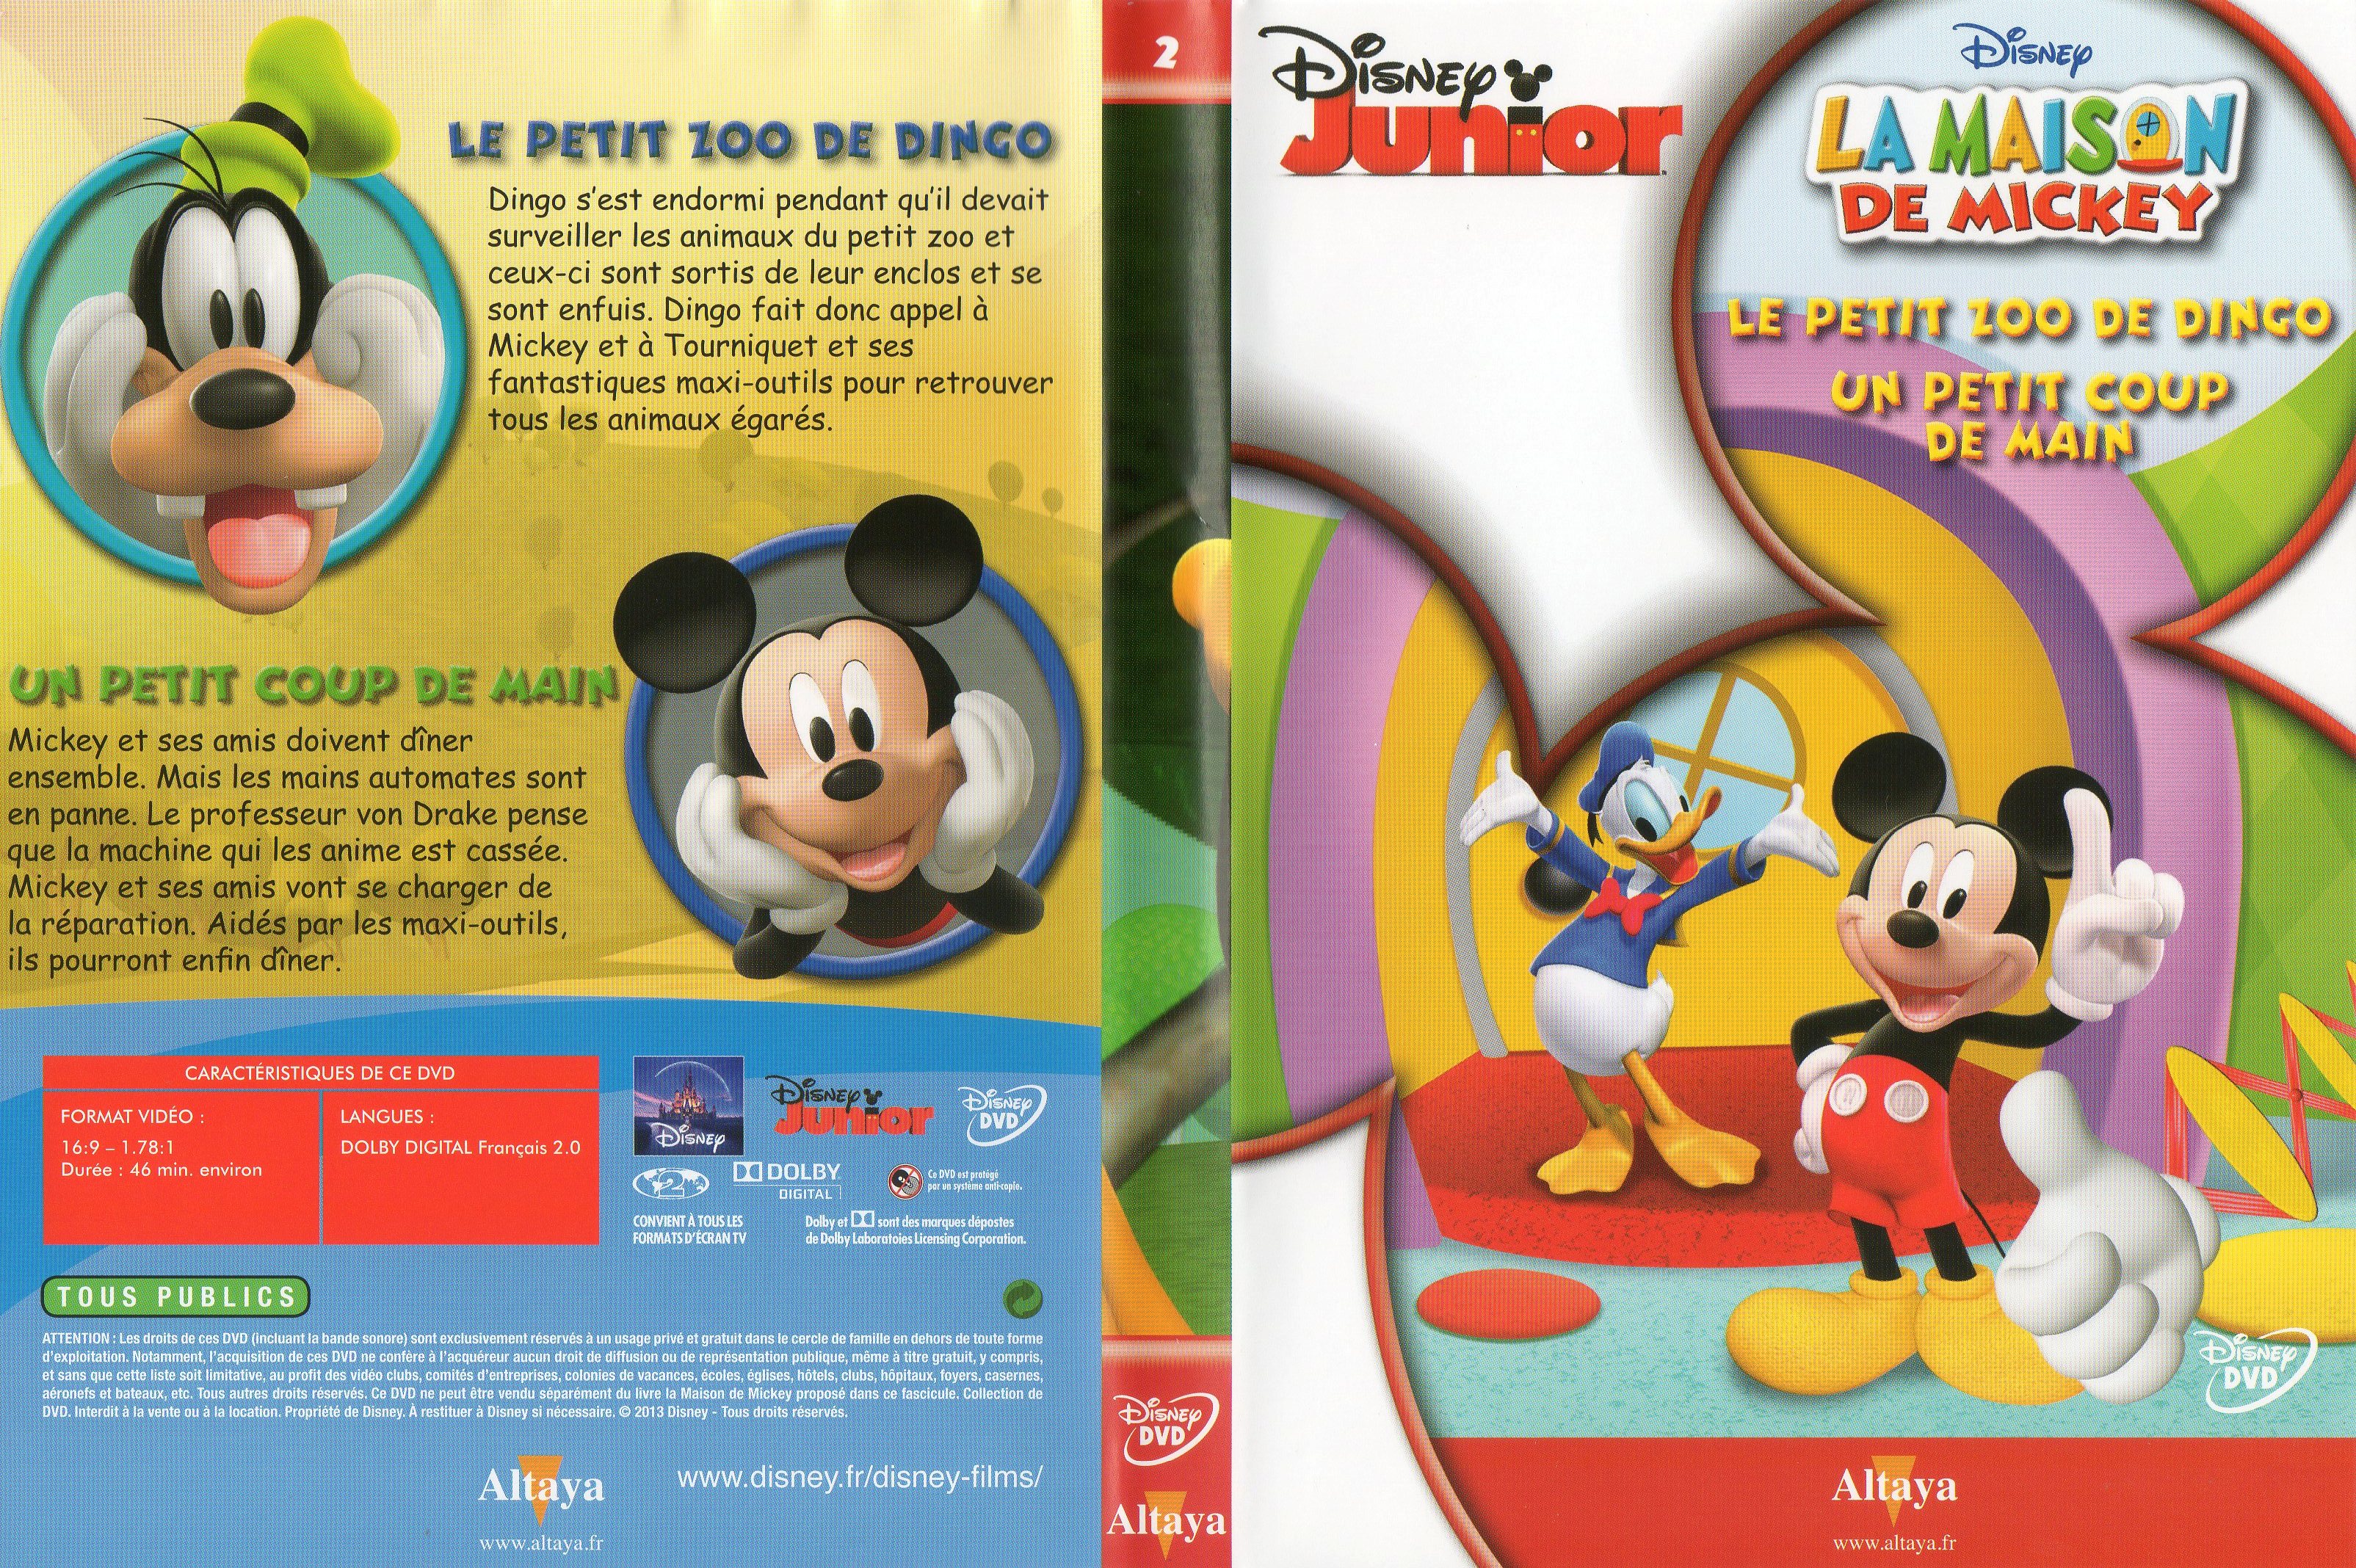 Jaquette DVD La maison de Mickey DVD 02